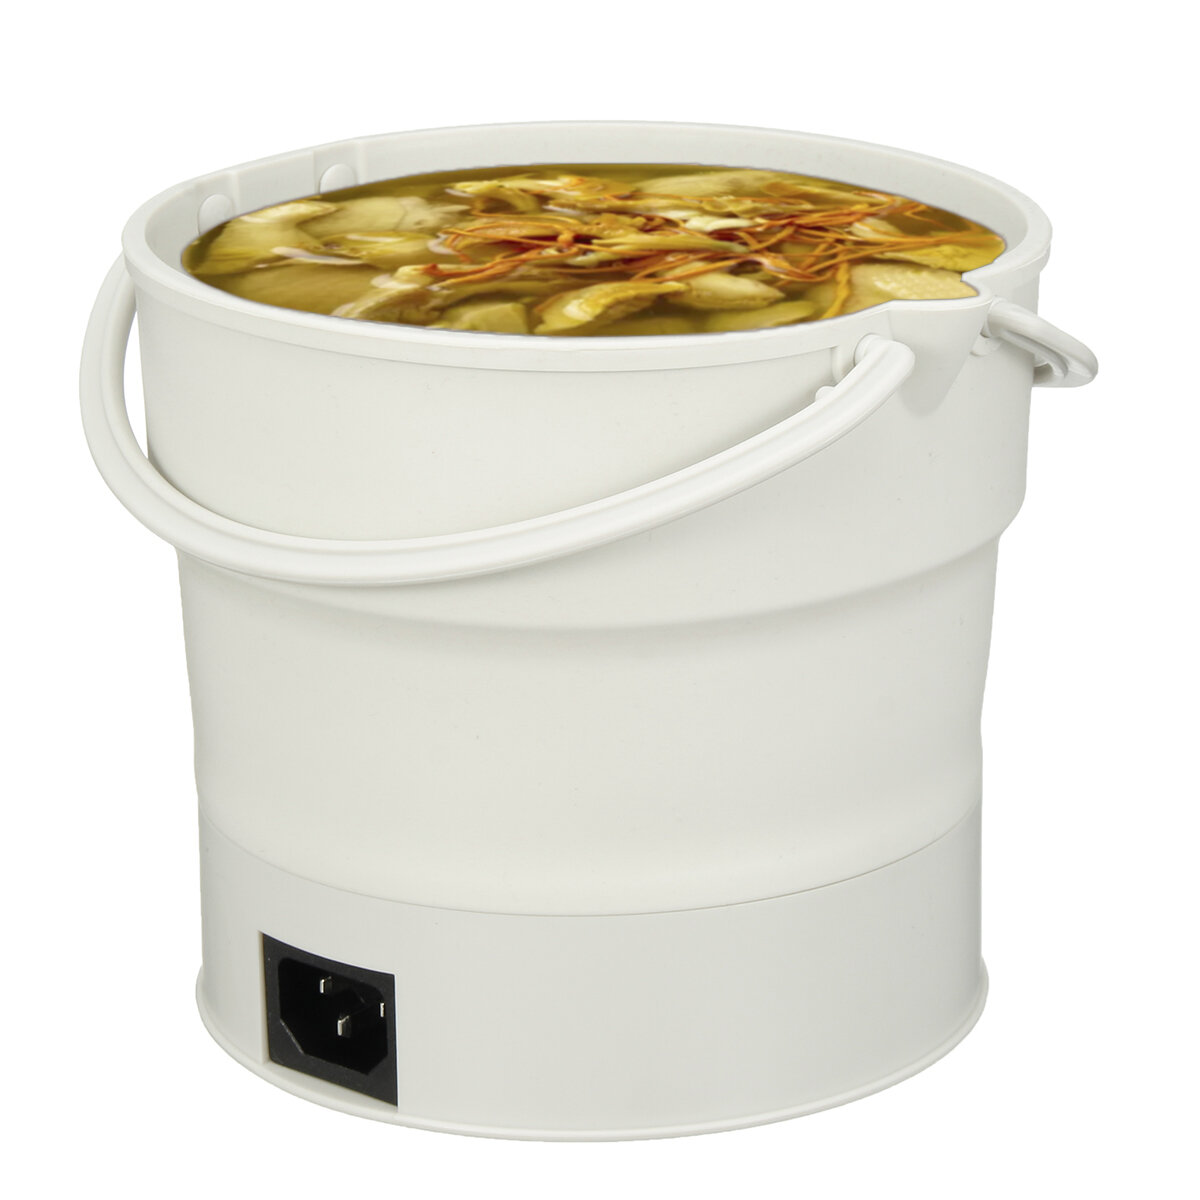 220 V 0.6L Portable Pliant Hot Pot Électrique Cuisinière Poêle Bouilloire Réchauffeur Récipient de Nourriture Pour Camping Randonnée Voyager